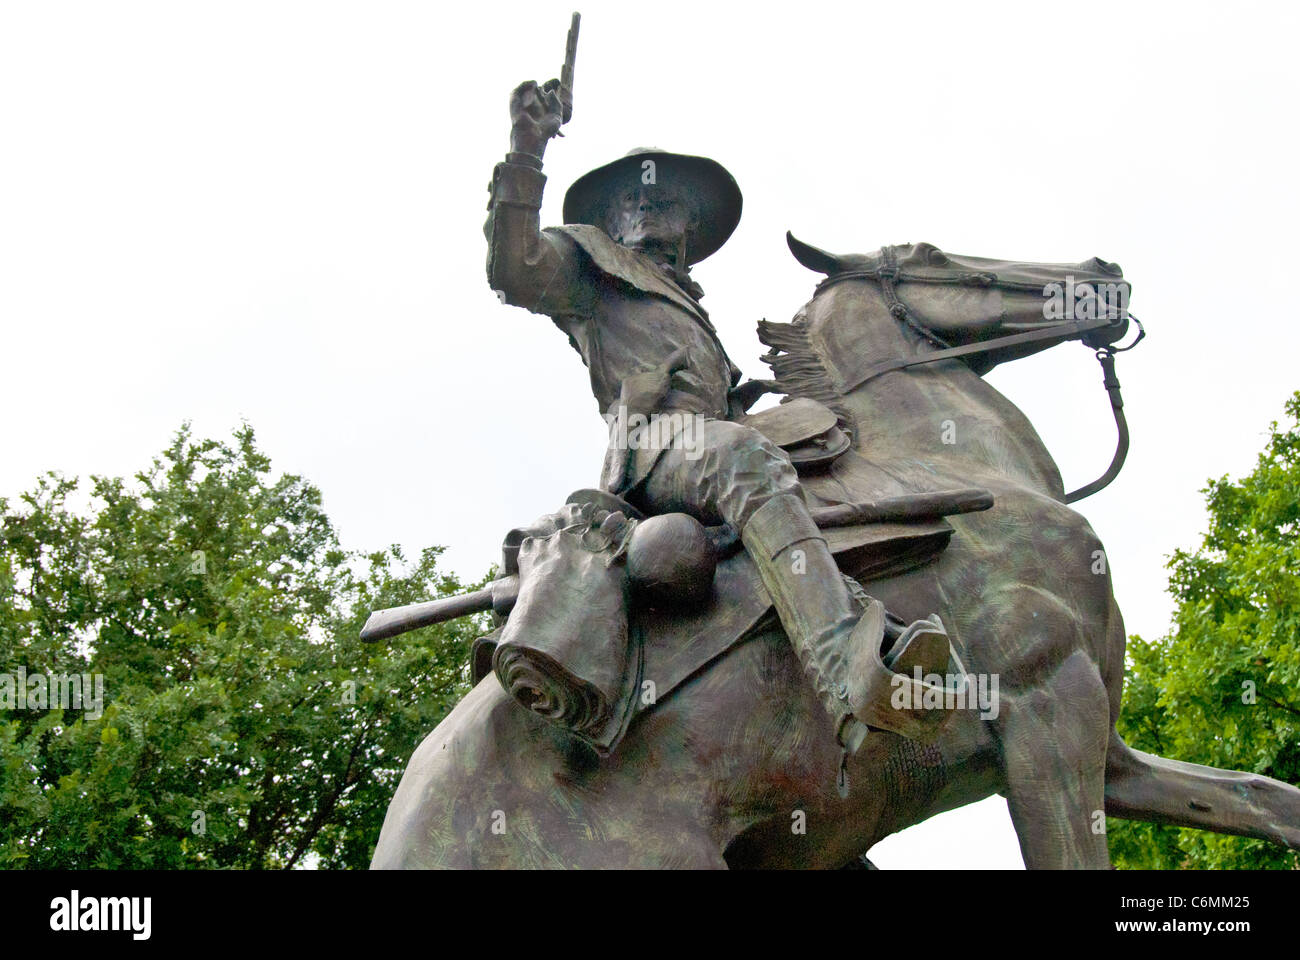 Texas Ranger le Capitaine John Coffee 'Jack' Hays (1817-1883) statue sur les Hays County Courthouse motif à San Marcos, Texas Banque D'Images